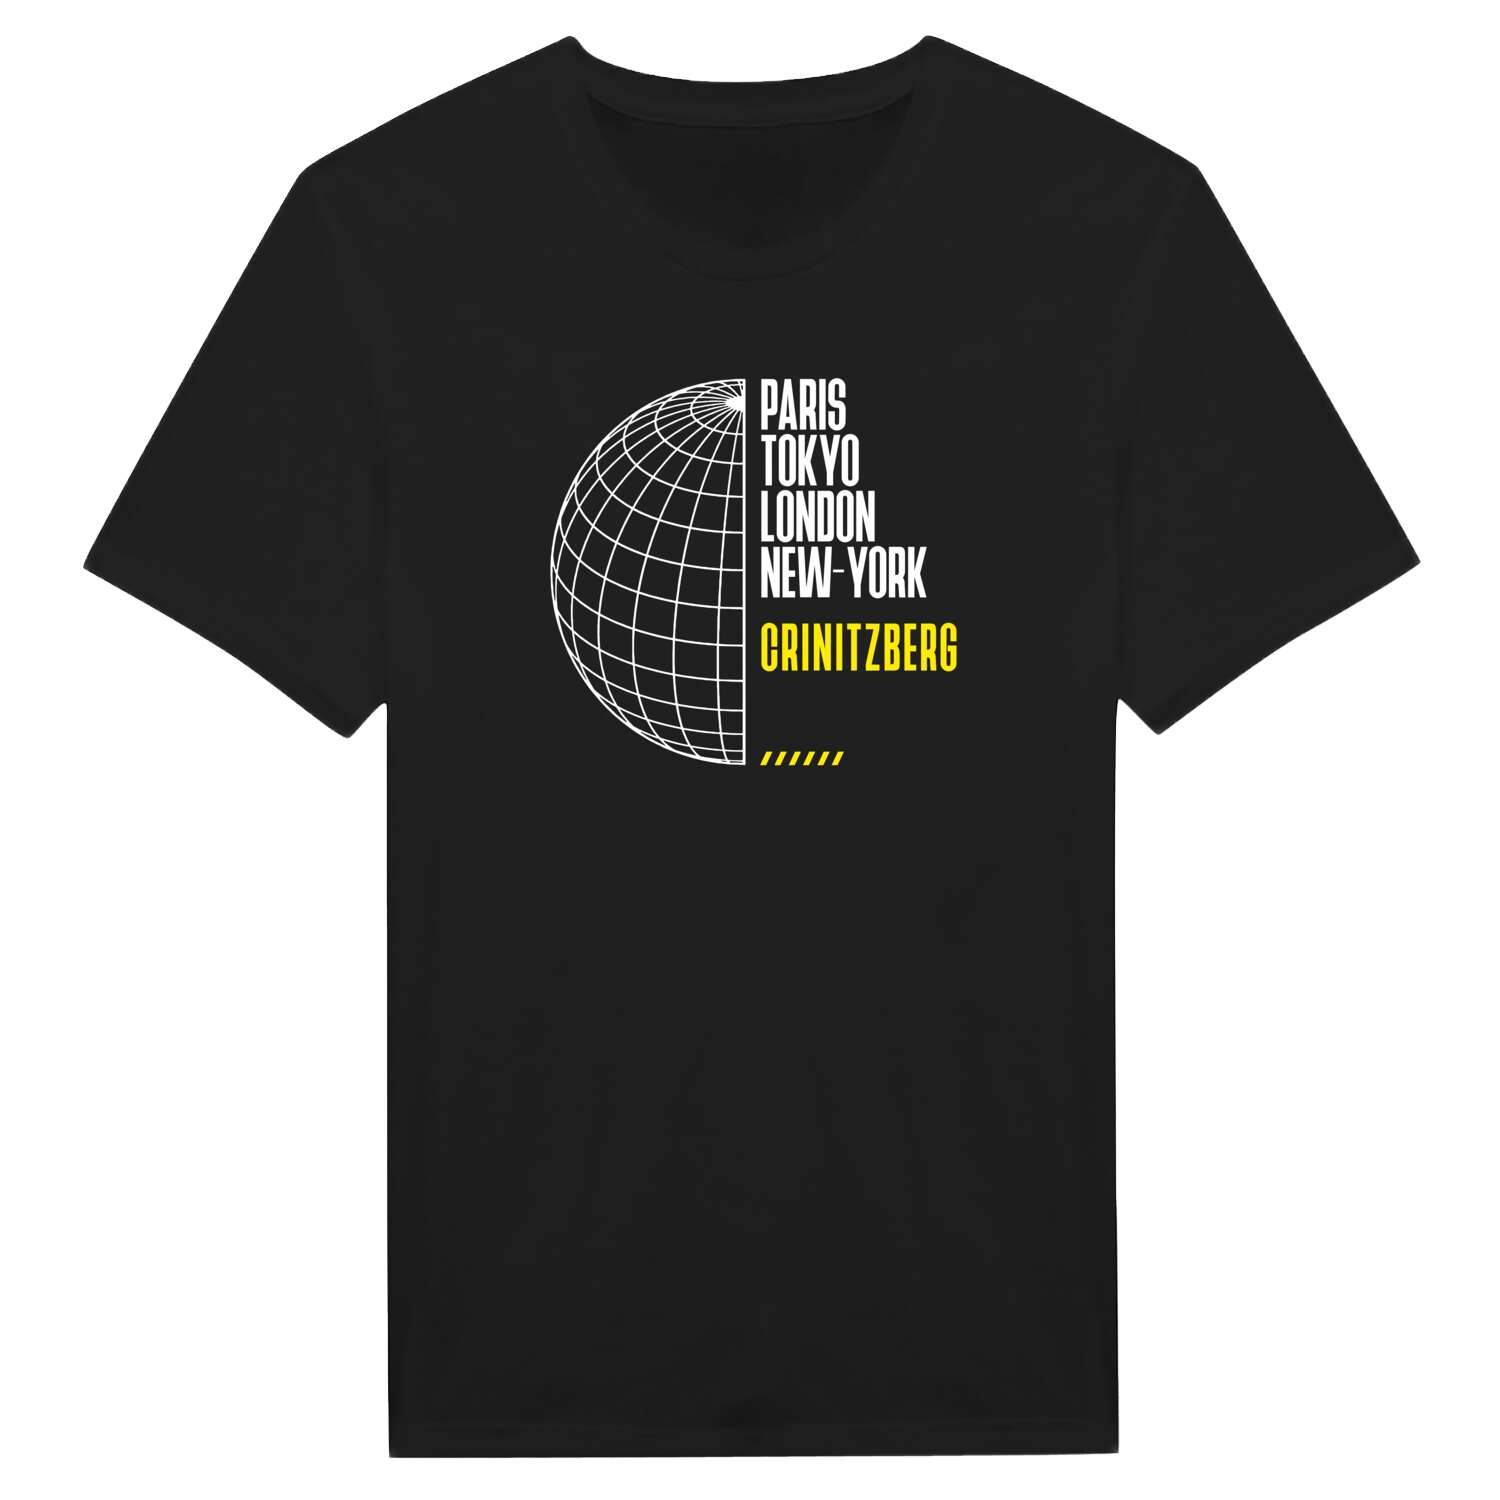 Crinitzberg T-Shirt »Paris Tokyo London«